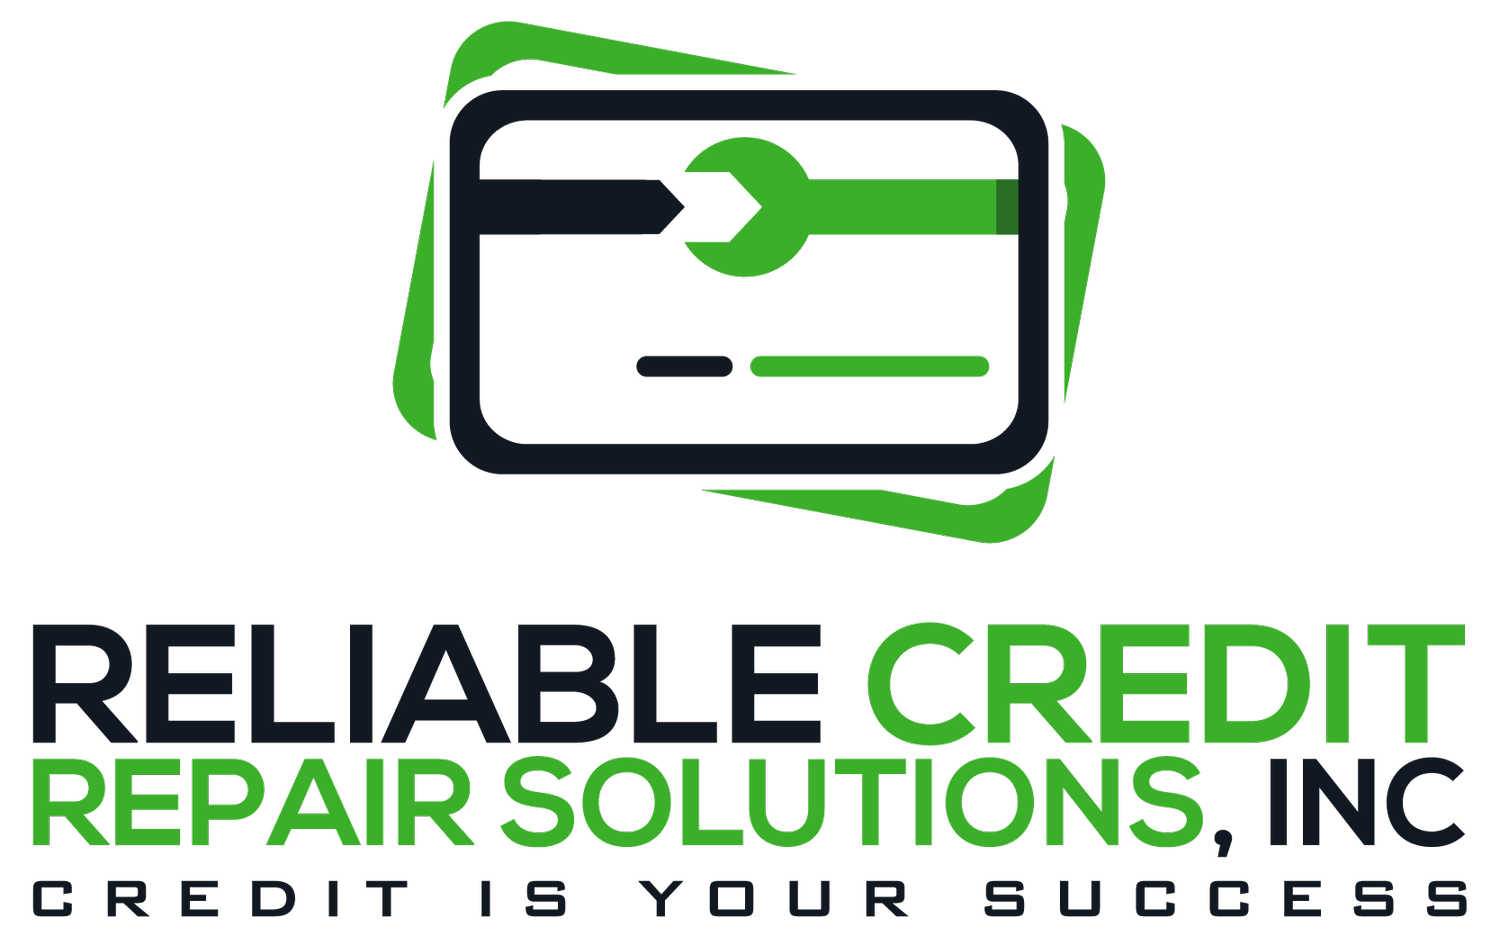 Reliable Credit Repair Solutions, Inc.